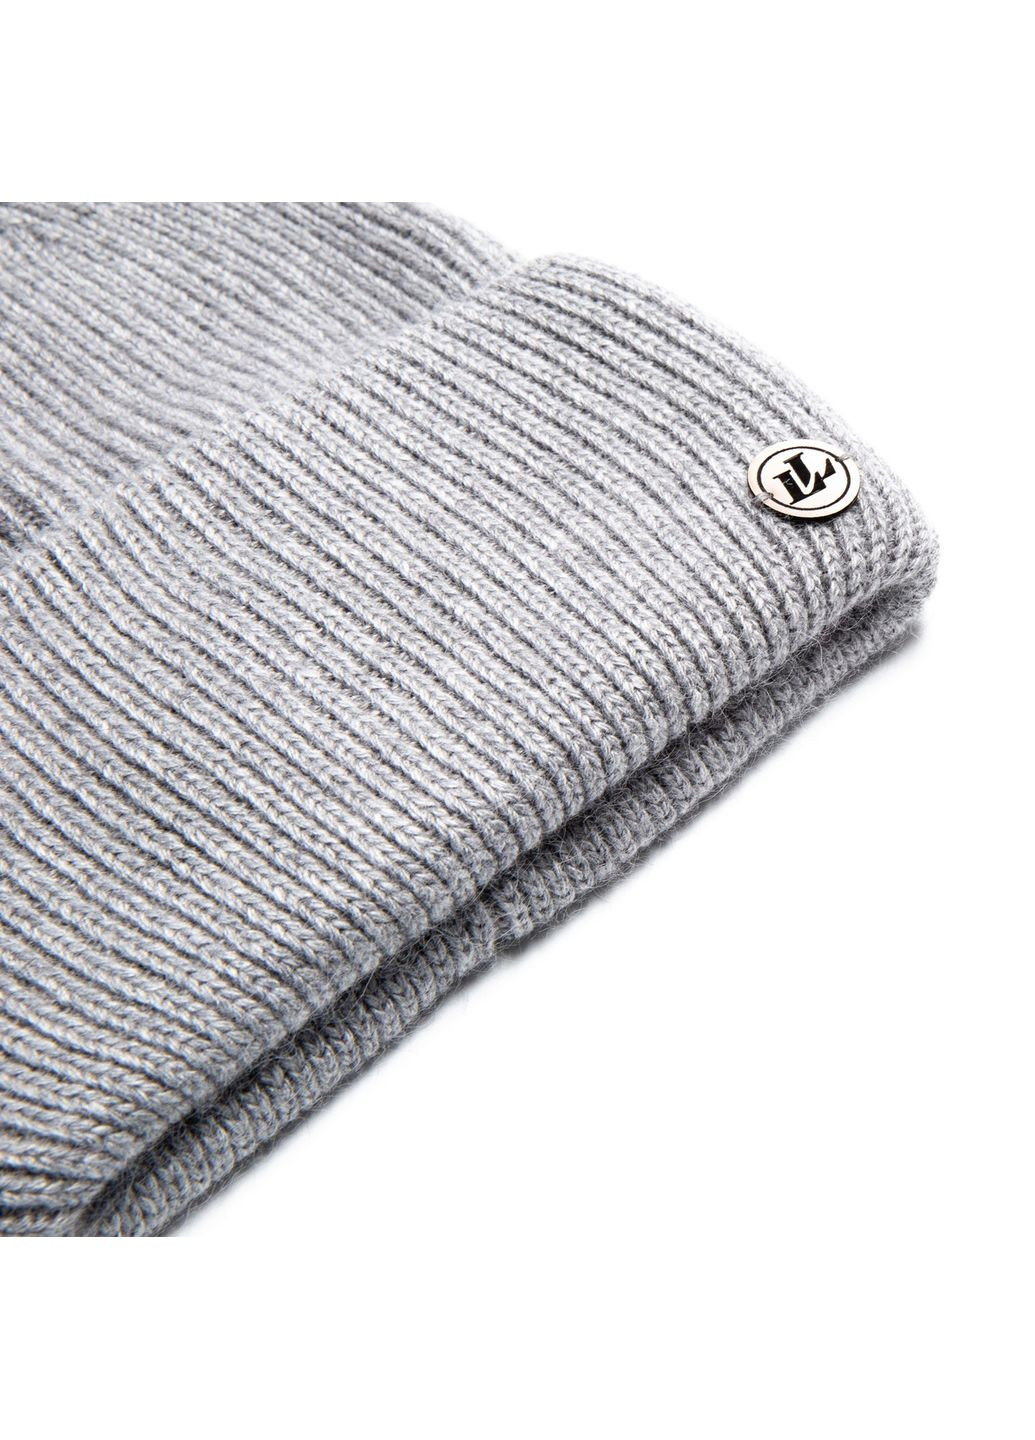 Набор шапка бини + шарф мужской шерсть серый GEORGE 695-000 LuckyLOOK 695-000m (289359555)